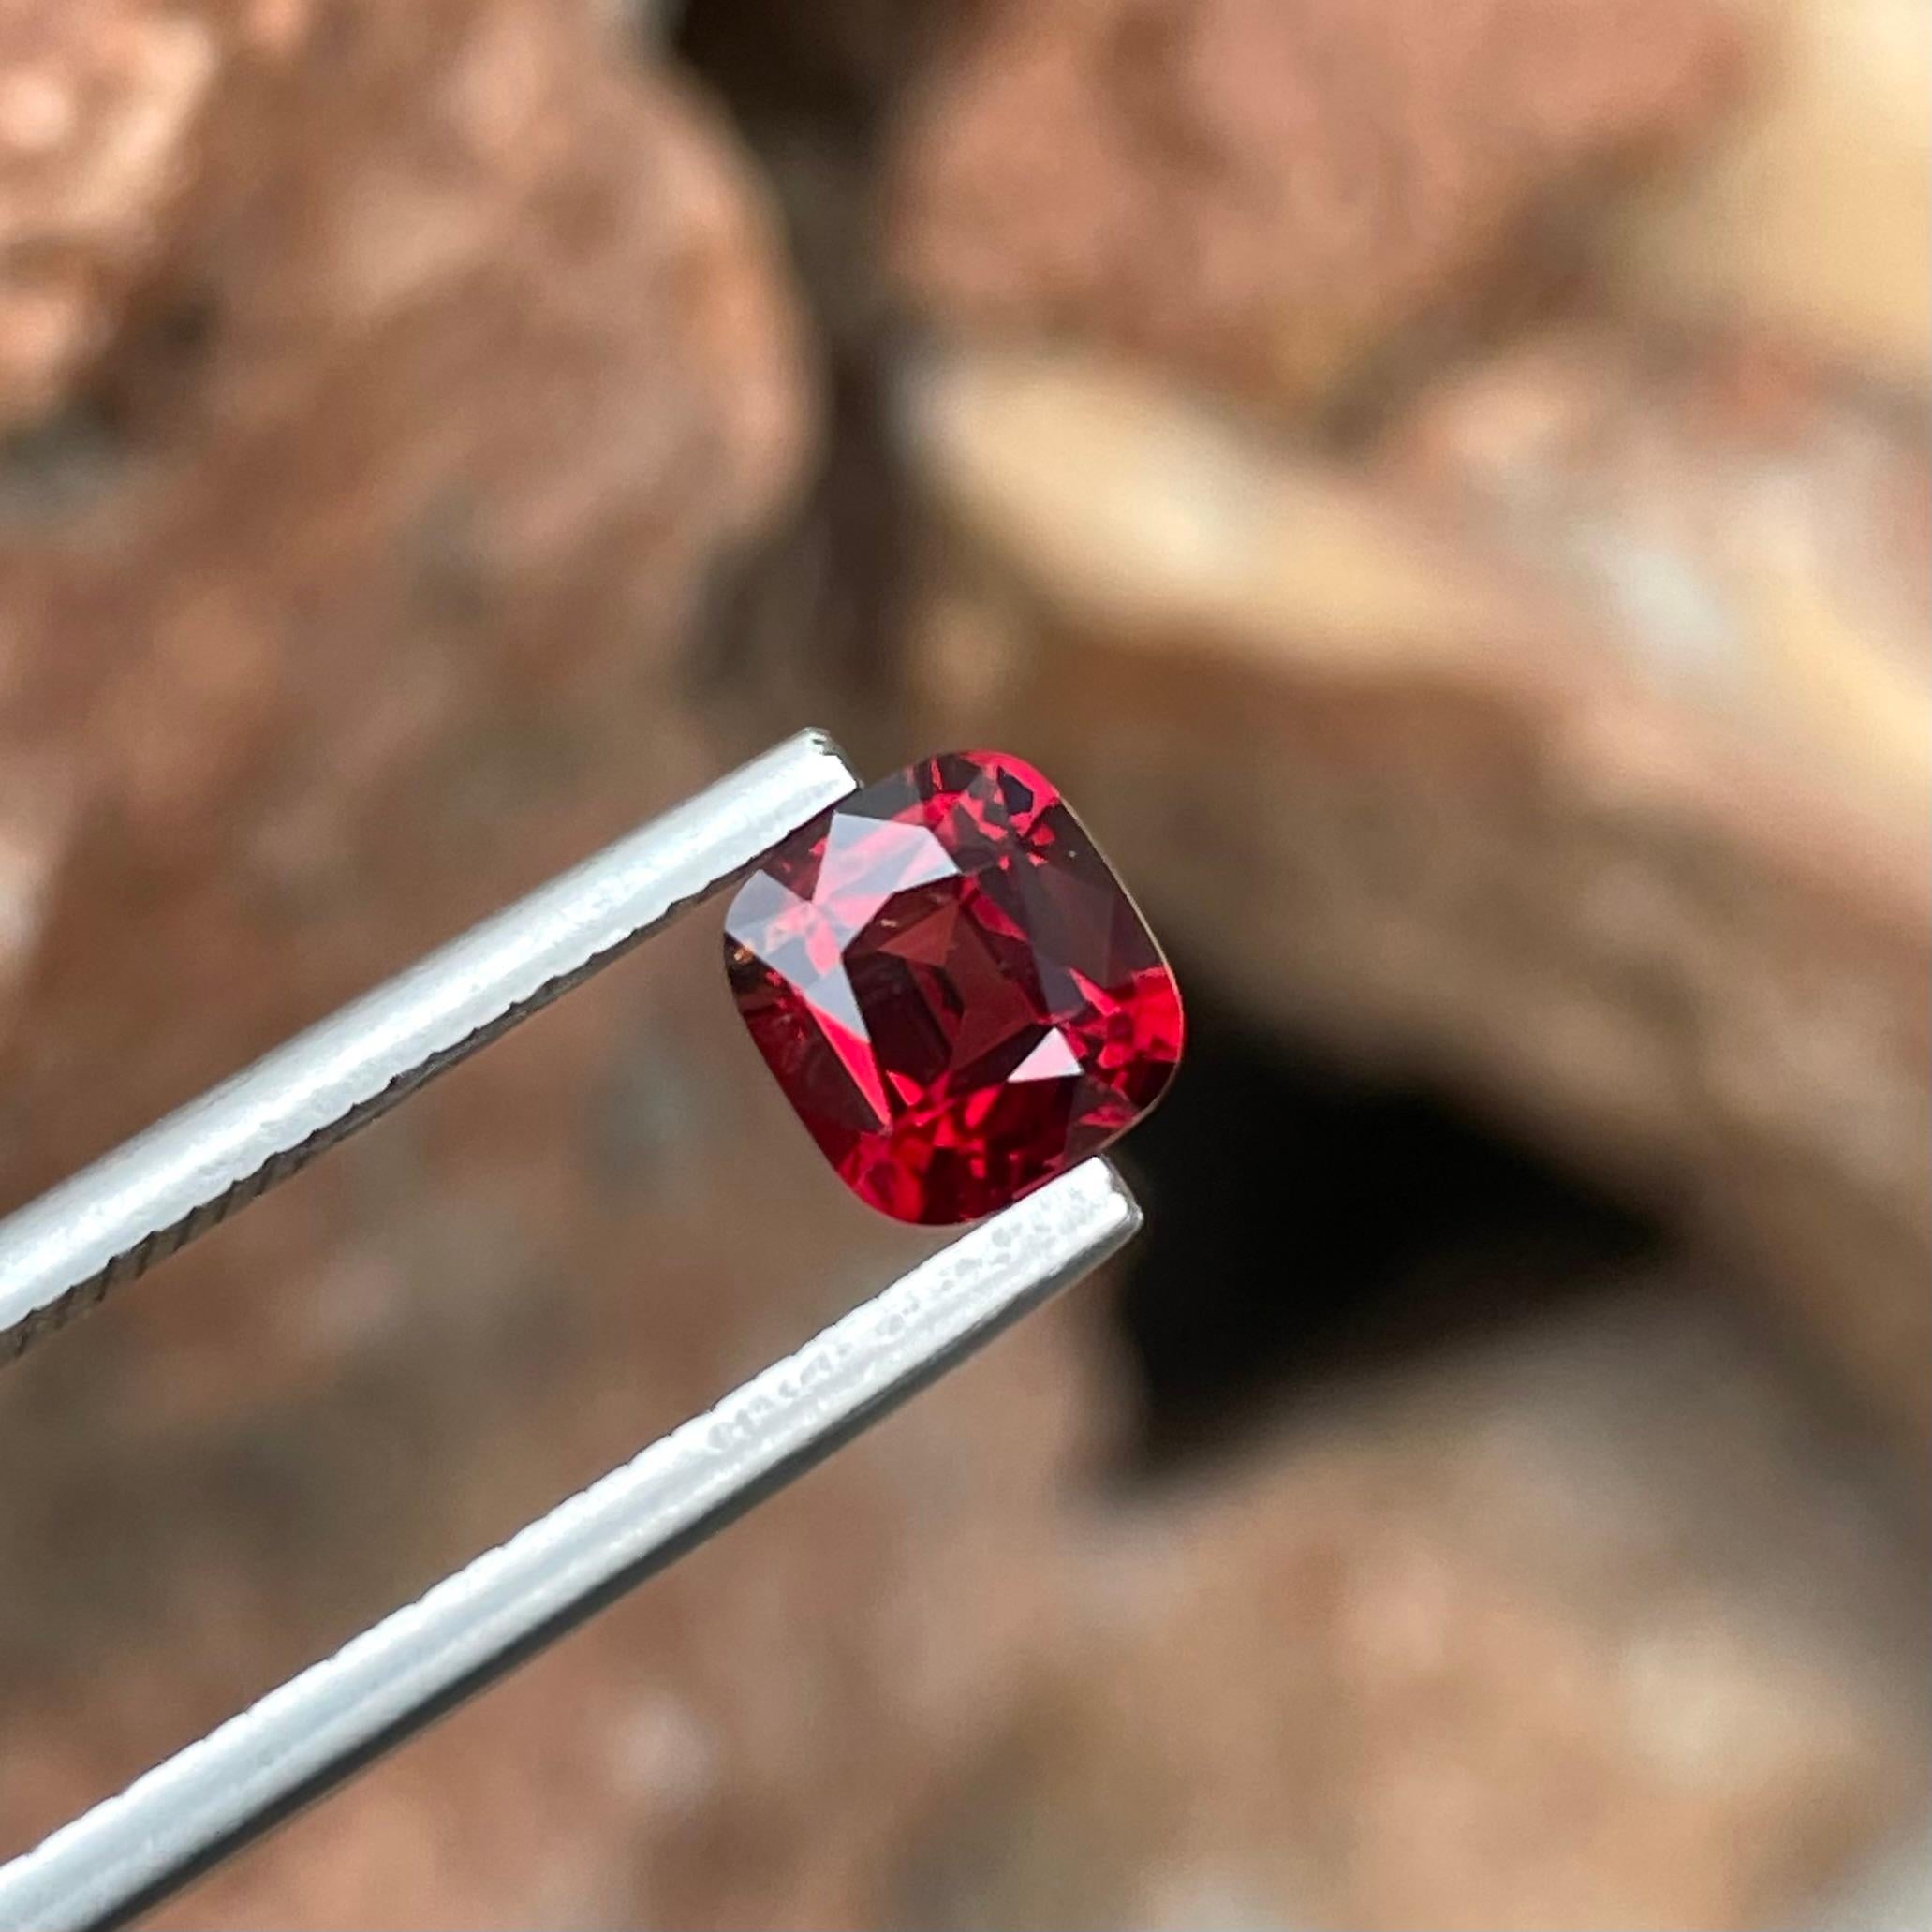 Poids 1,35 carats 
Dimensions 6,75x6,22x3,92 mm
Traitement aucun 
Origine Birmanie 
Clarté VVS
Coussin de forme 
Coupe fantaisie coussin 




Admirez l'attrait de cette exquise spinelle rouge de Birmanie de 1.35 carats, une pierre précieuse d'une